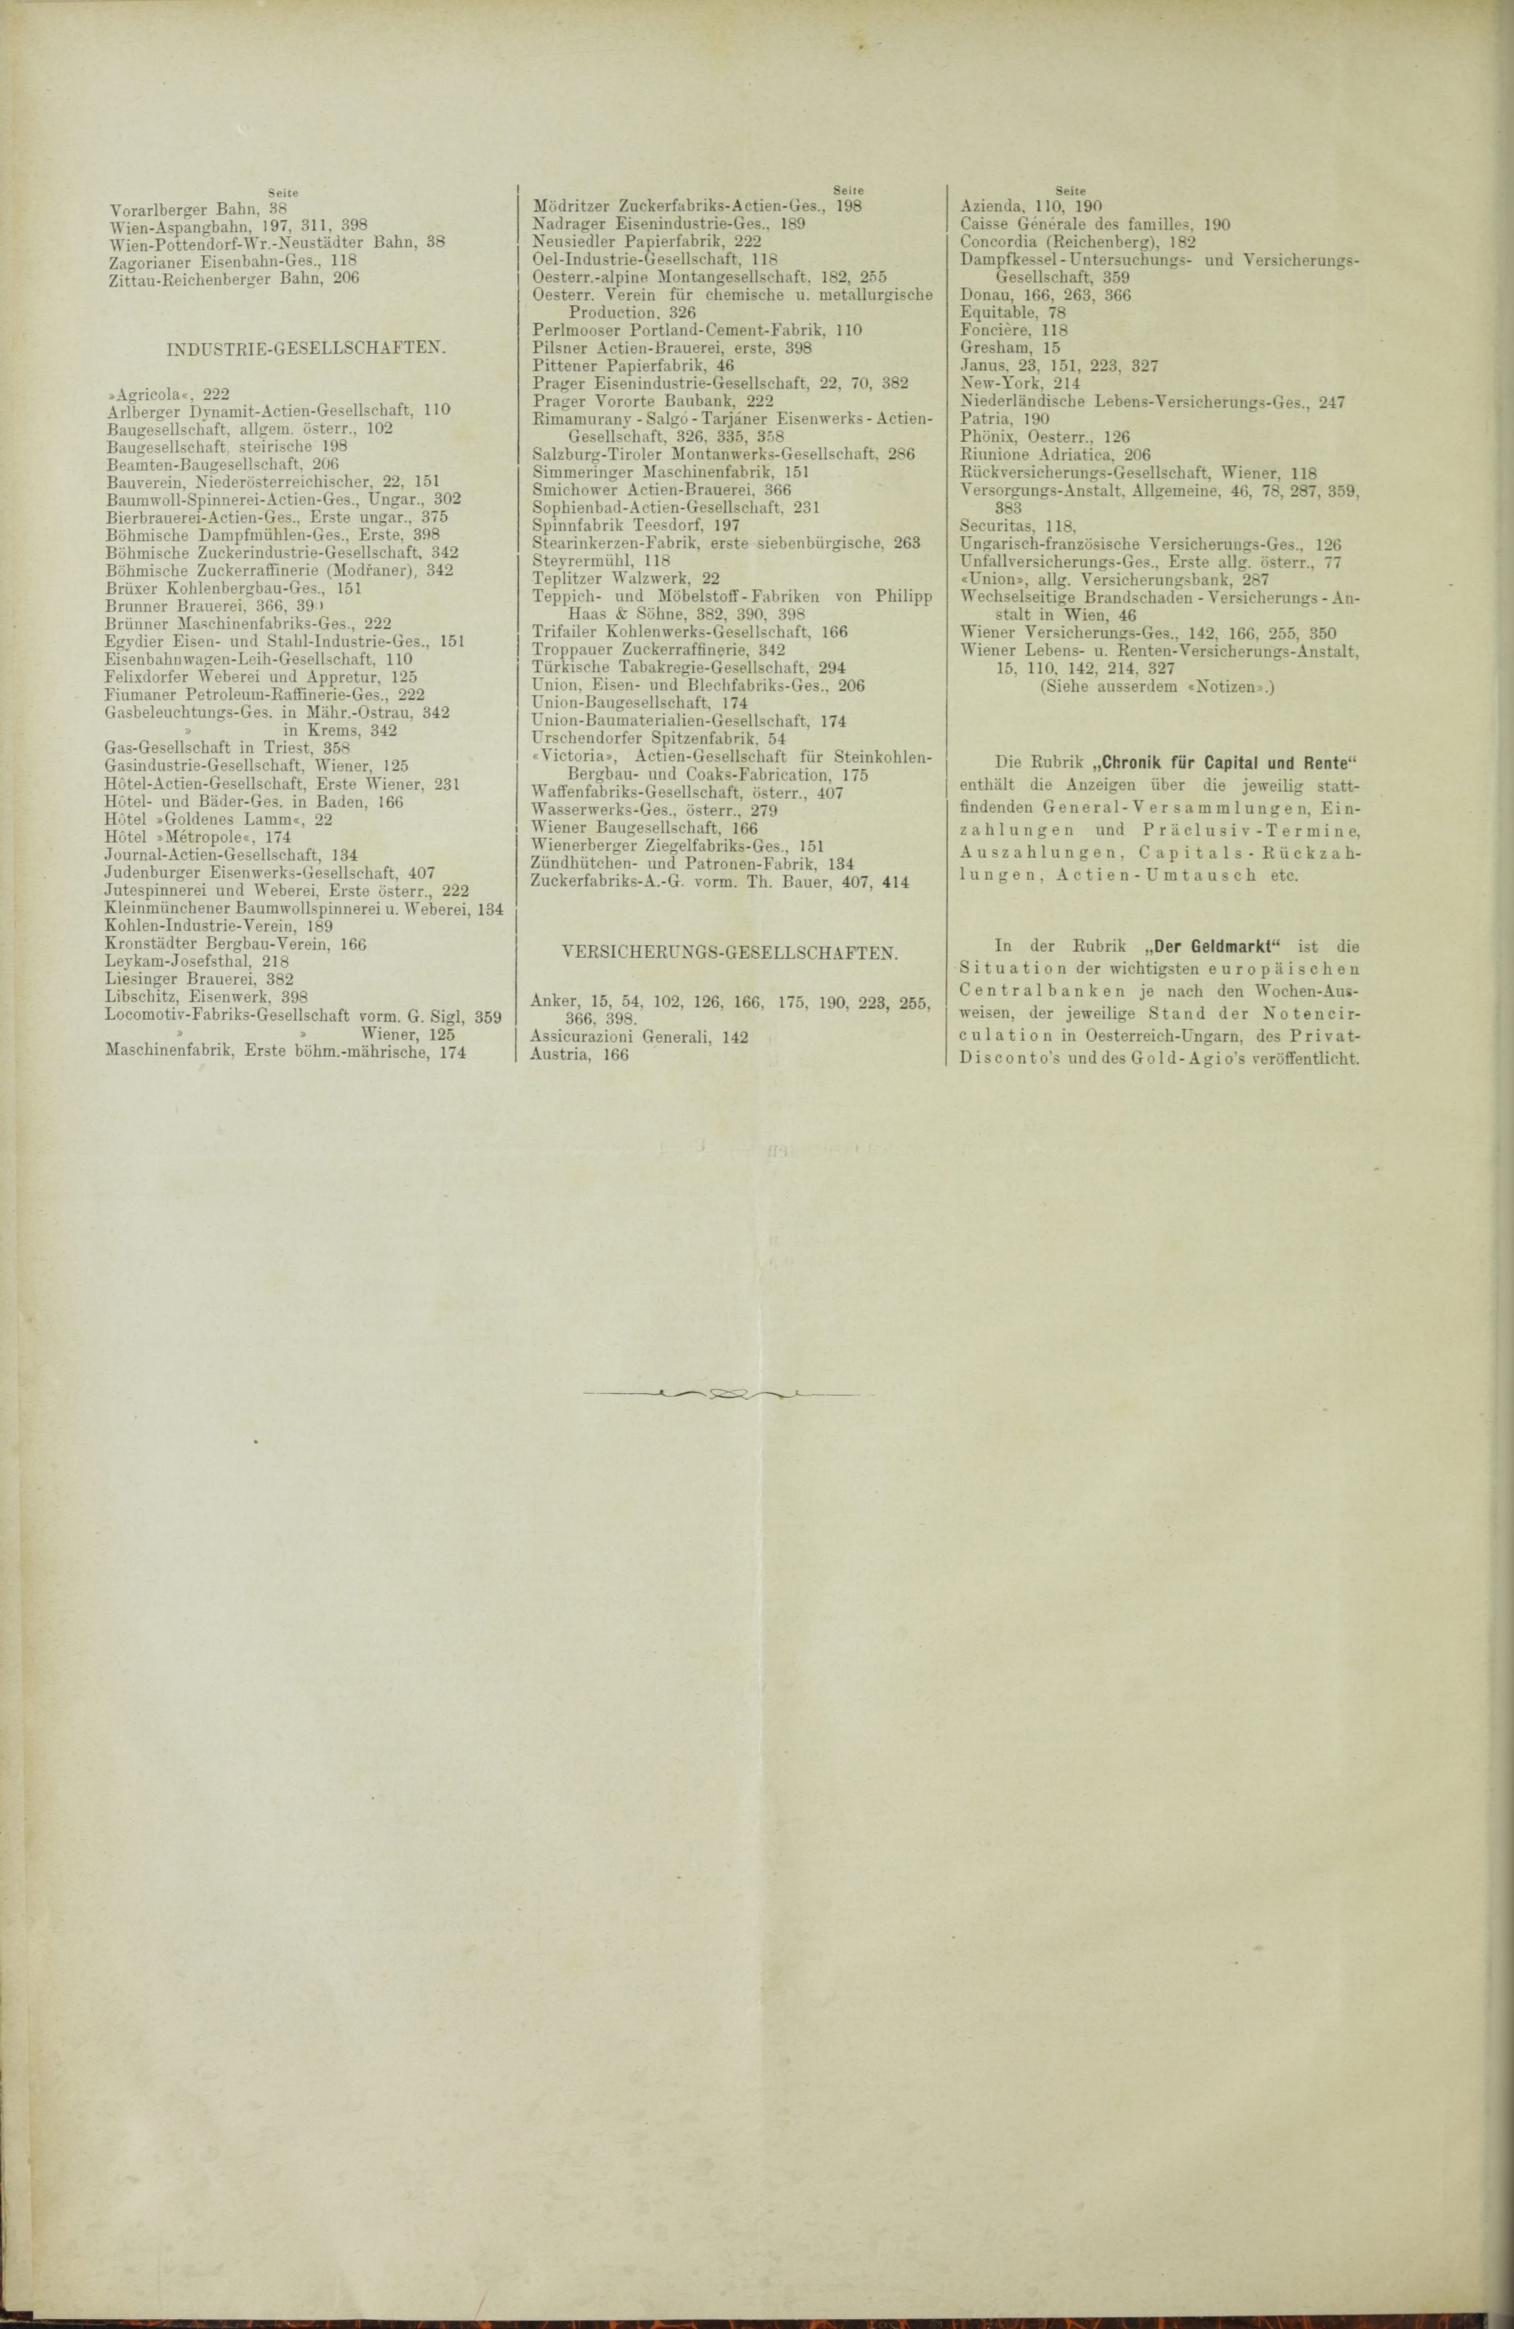 Der Tresor 07.10.1886 - Seite 12